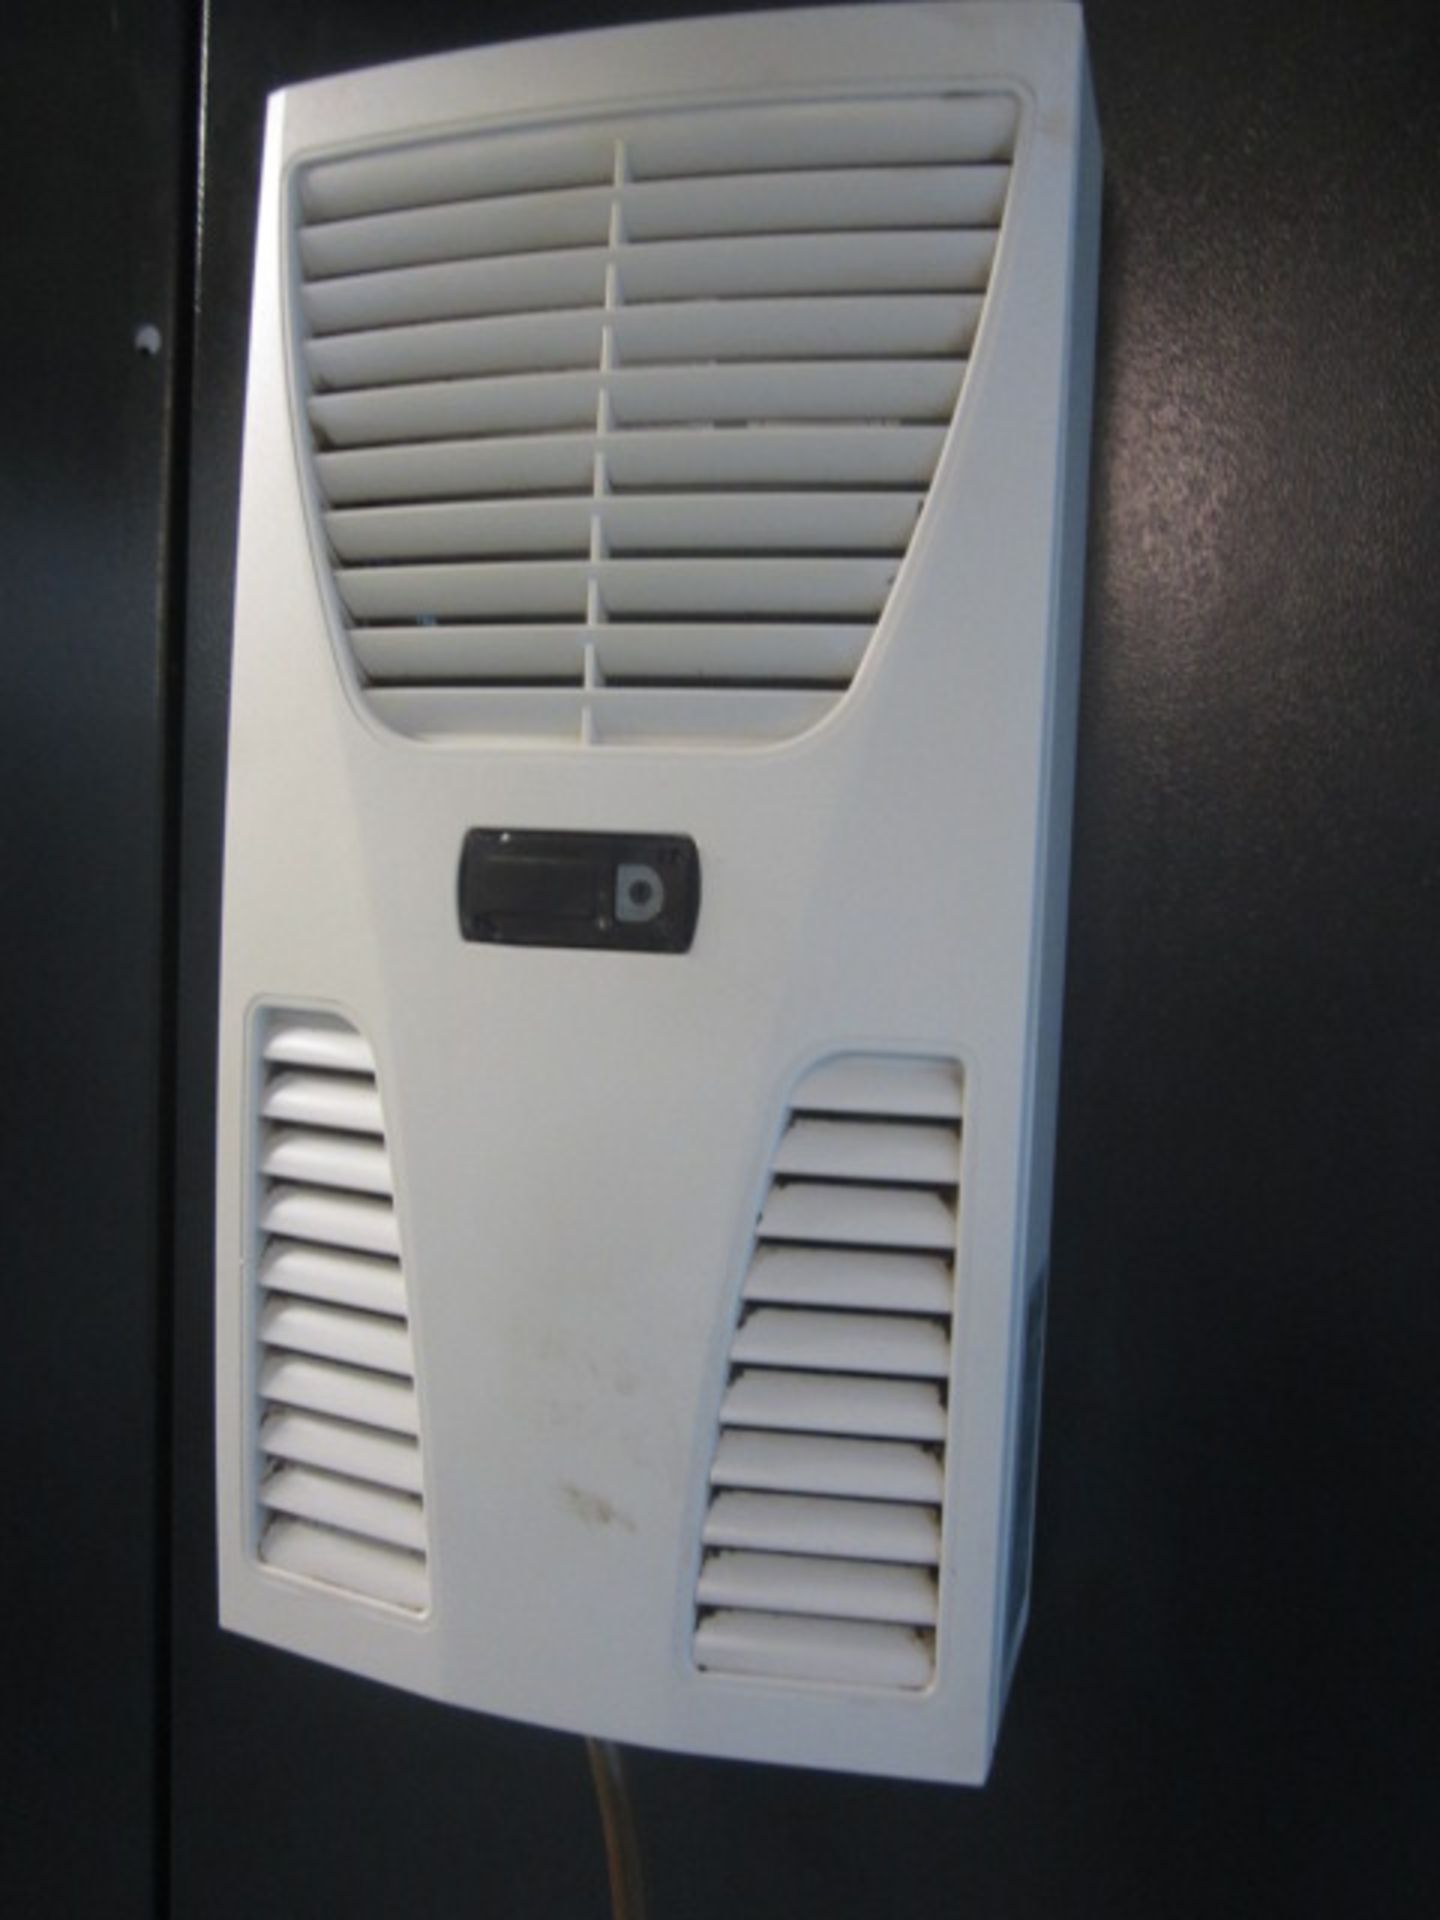 DMG Gildemeister DMC 635V Eco vertical machining centre, serial no: 1537000418E (2011), Siemens - Image 12 of 12